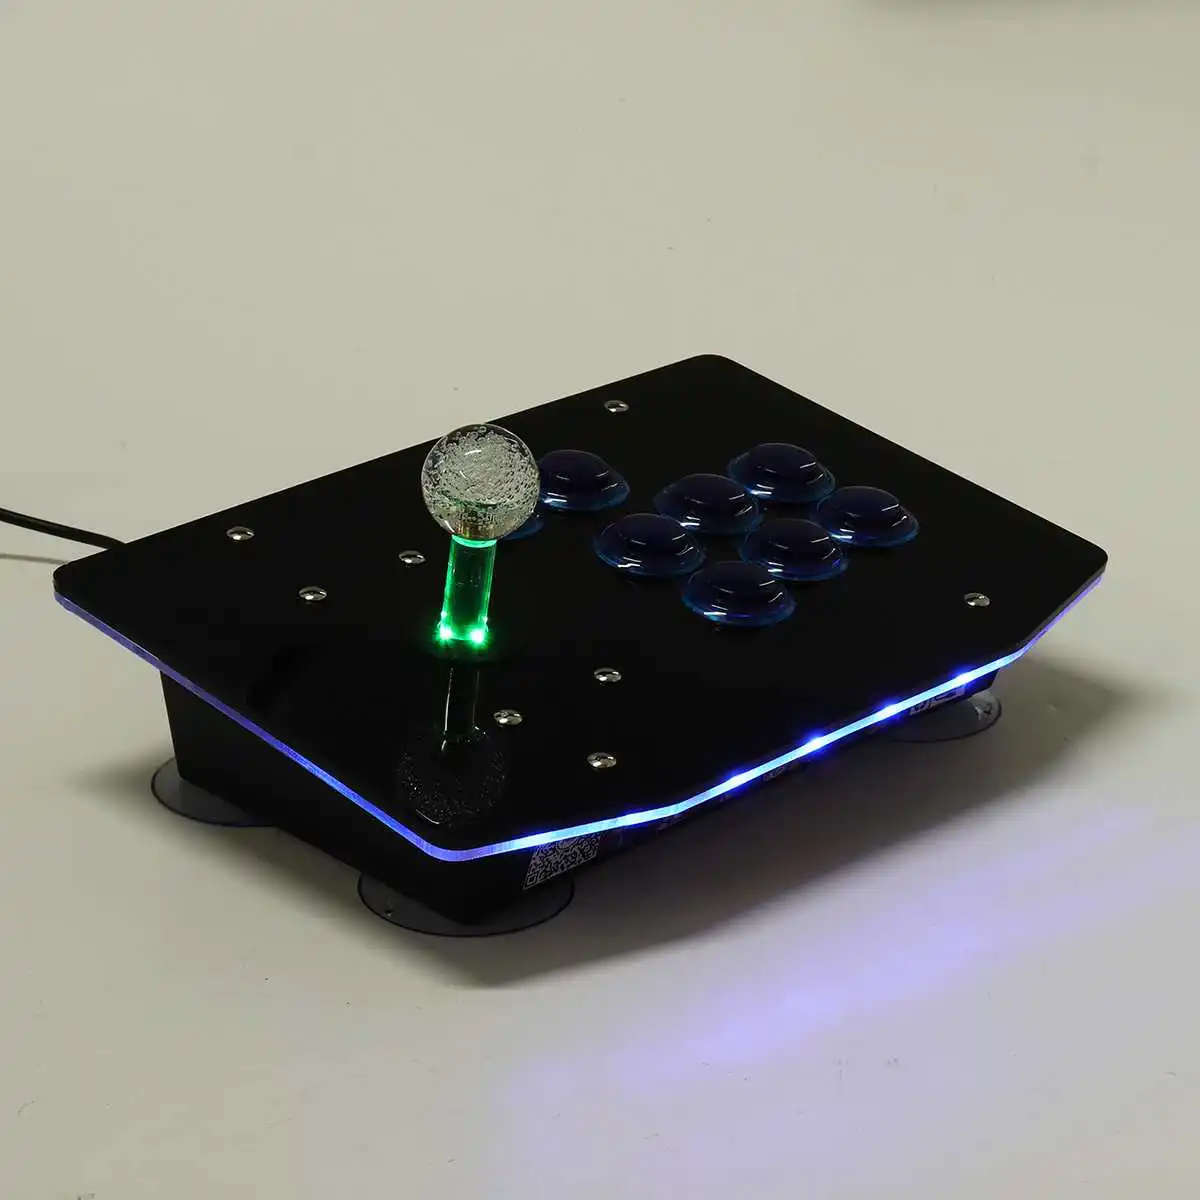 K3/T1/RS USB проводной игровой светодиодный джойстик для аркадных игр, файтинги, геймпад без задержки, игровая консоль для ПК - Цвет: T1 Dazzle blue